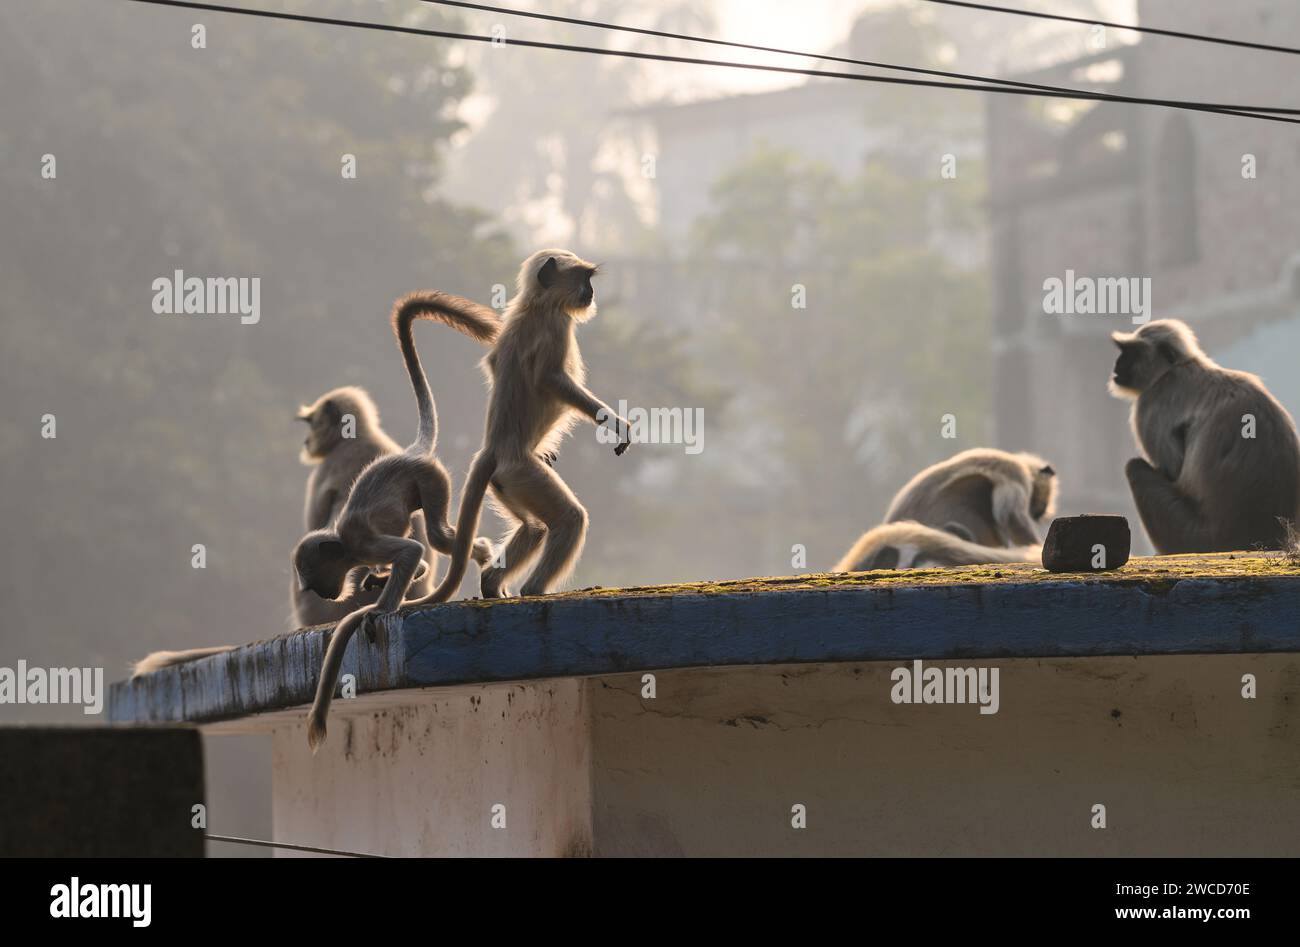 Un gruppo di langur hanuman o scimmie hanuman che si prendono il sole sul tetto una mattina presto d'inverno, gli adulti a volte sdraiati, mentre i loro giovani stanno facendo vari gesti, alcuni stanno cercando di alzarsi e alzare le braccia o appendersi alle foglie di un albero, alcuni saltano in giro, è come una giornata di scimmie a Tehatta, nel Bengala Occidentale, in India. Foto Stock